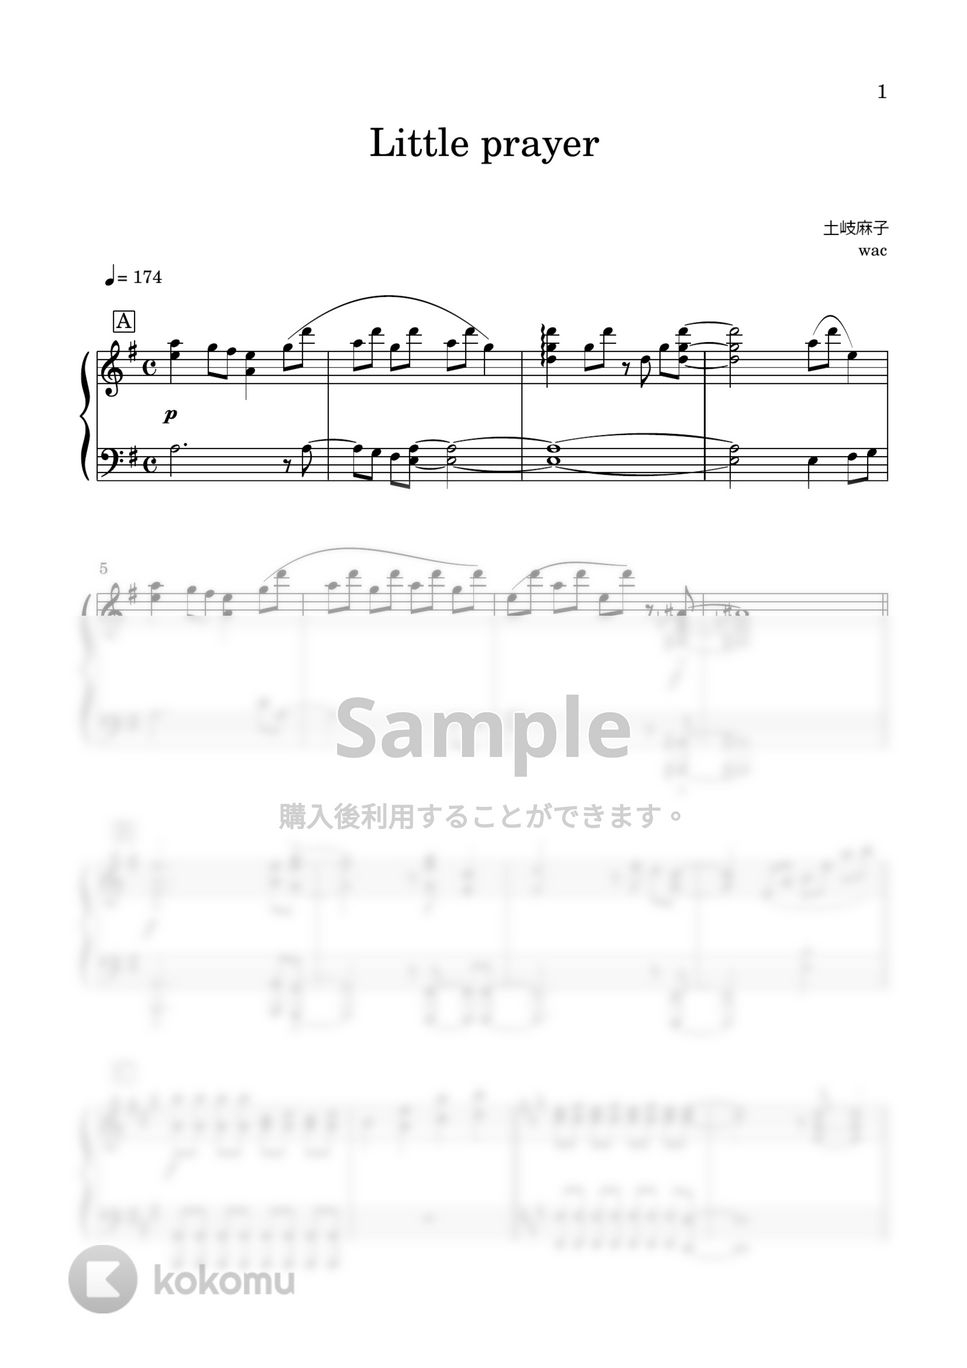 土岐麻子 - Little prayer by tame channel